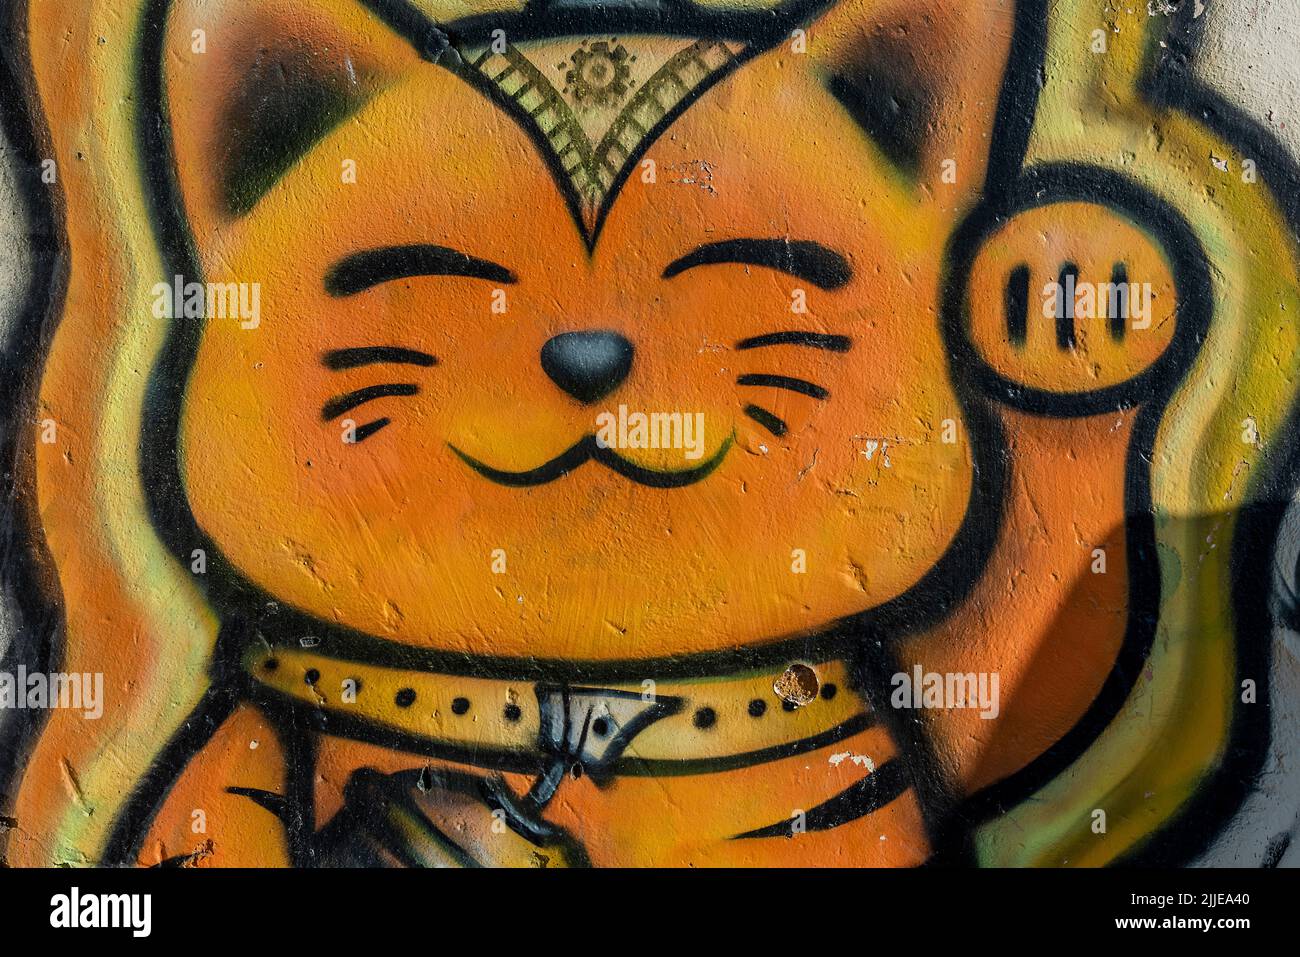 chinesische Katze Katze Katze Wandmalerei, komödiantisches Katze. Katze winken, Komödie Katze, humorvolle Katze, lächelnde Katze, Cartoon-Gemälde von Katze, orange gefärbte Katze. Stockfoto